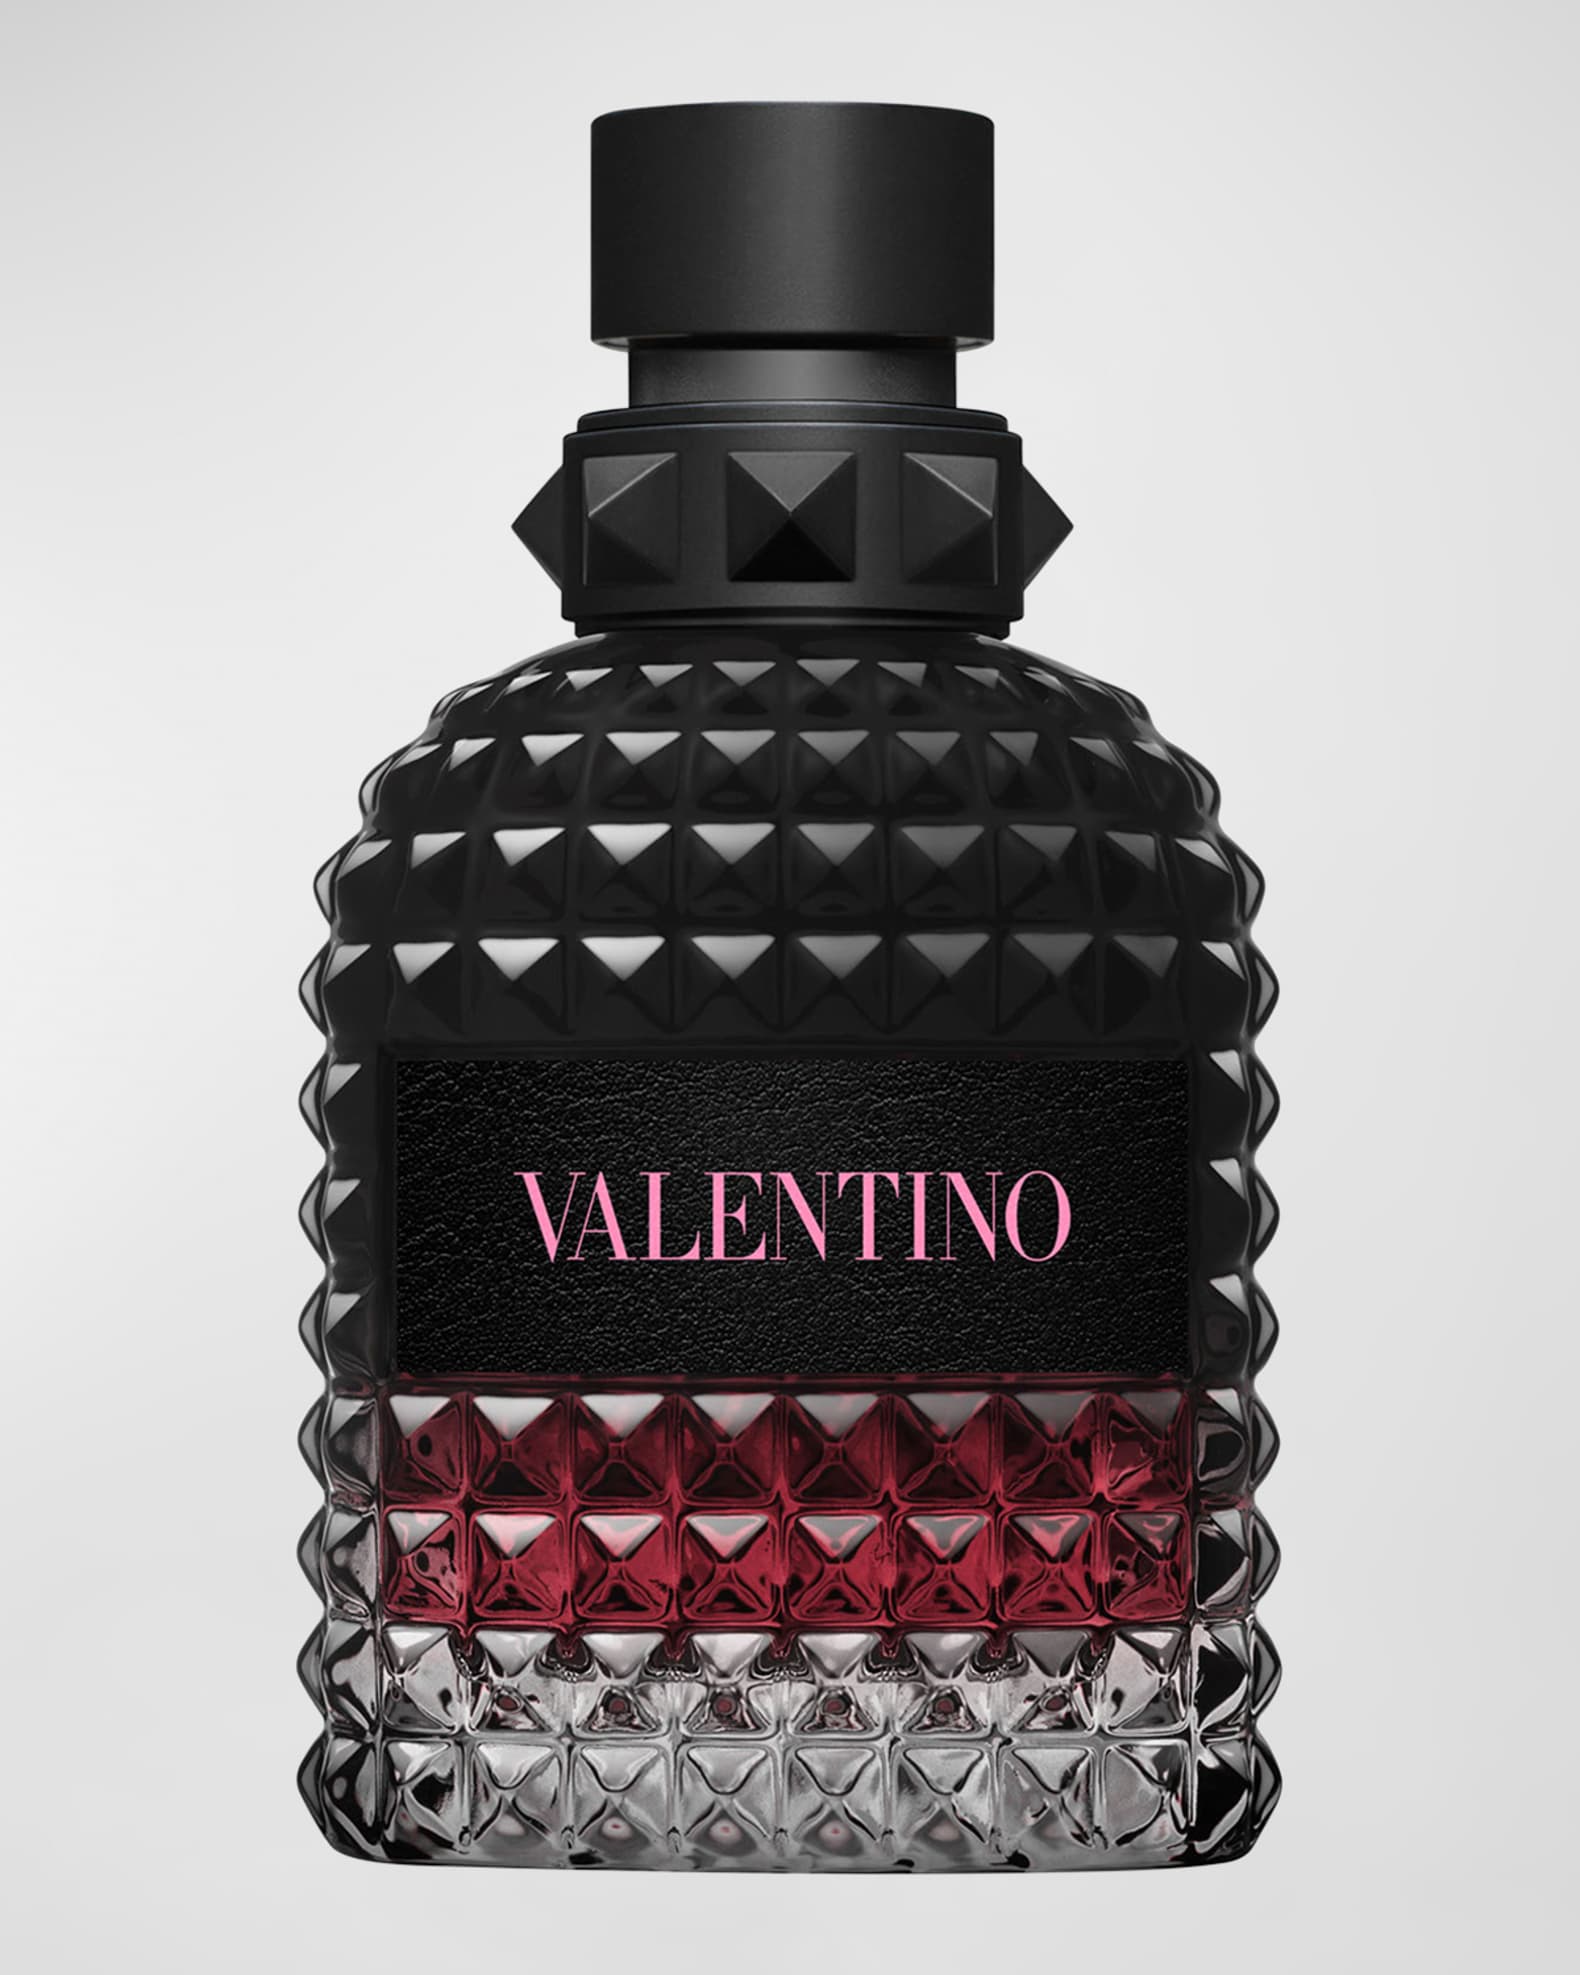 Valentino Men's Uomo Born in Roma Intense Eau de Parfum, 1.7 oz ...